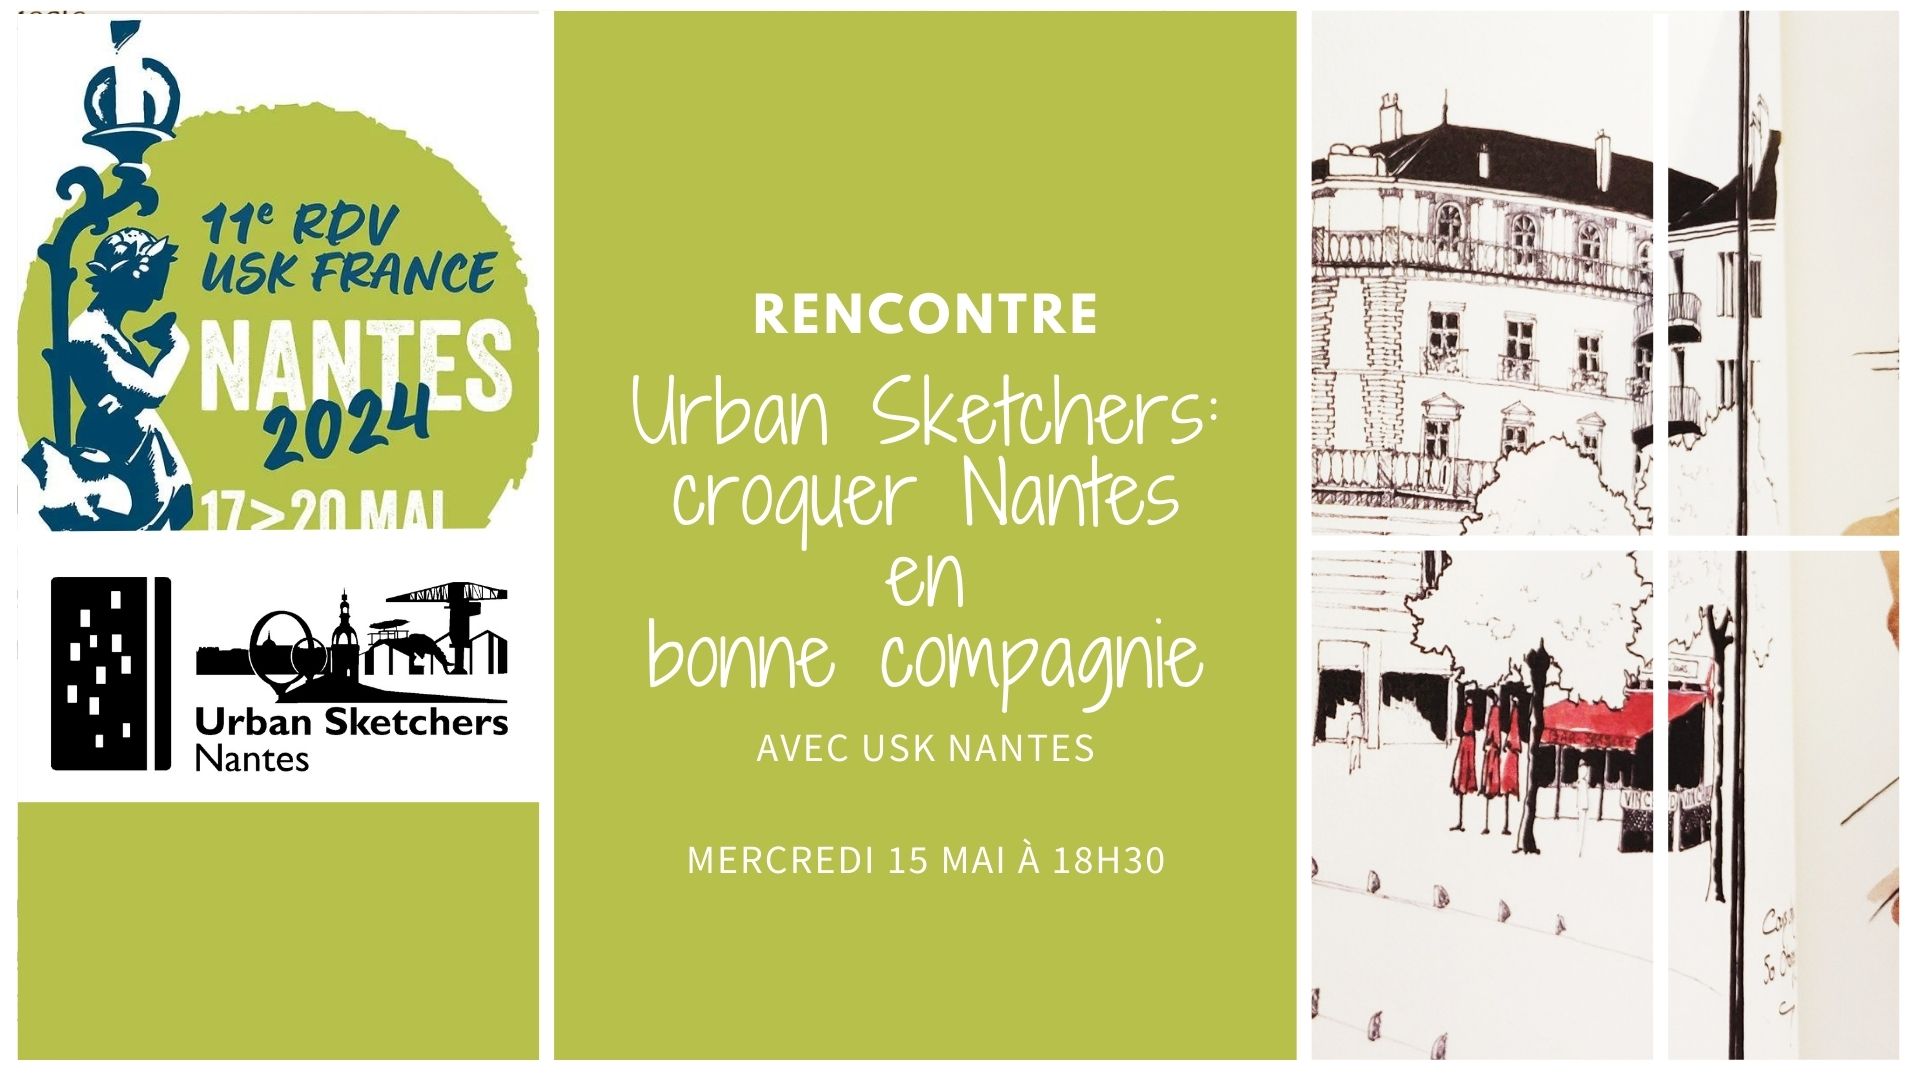 Urban Sketchers: croquer Nantes en bonne compagnie